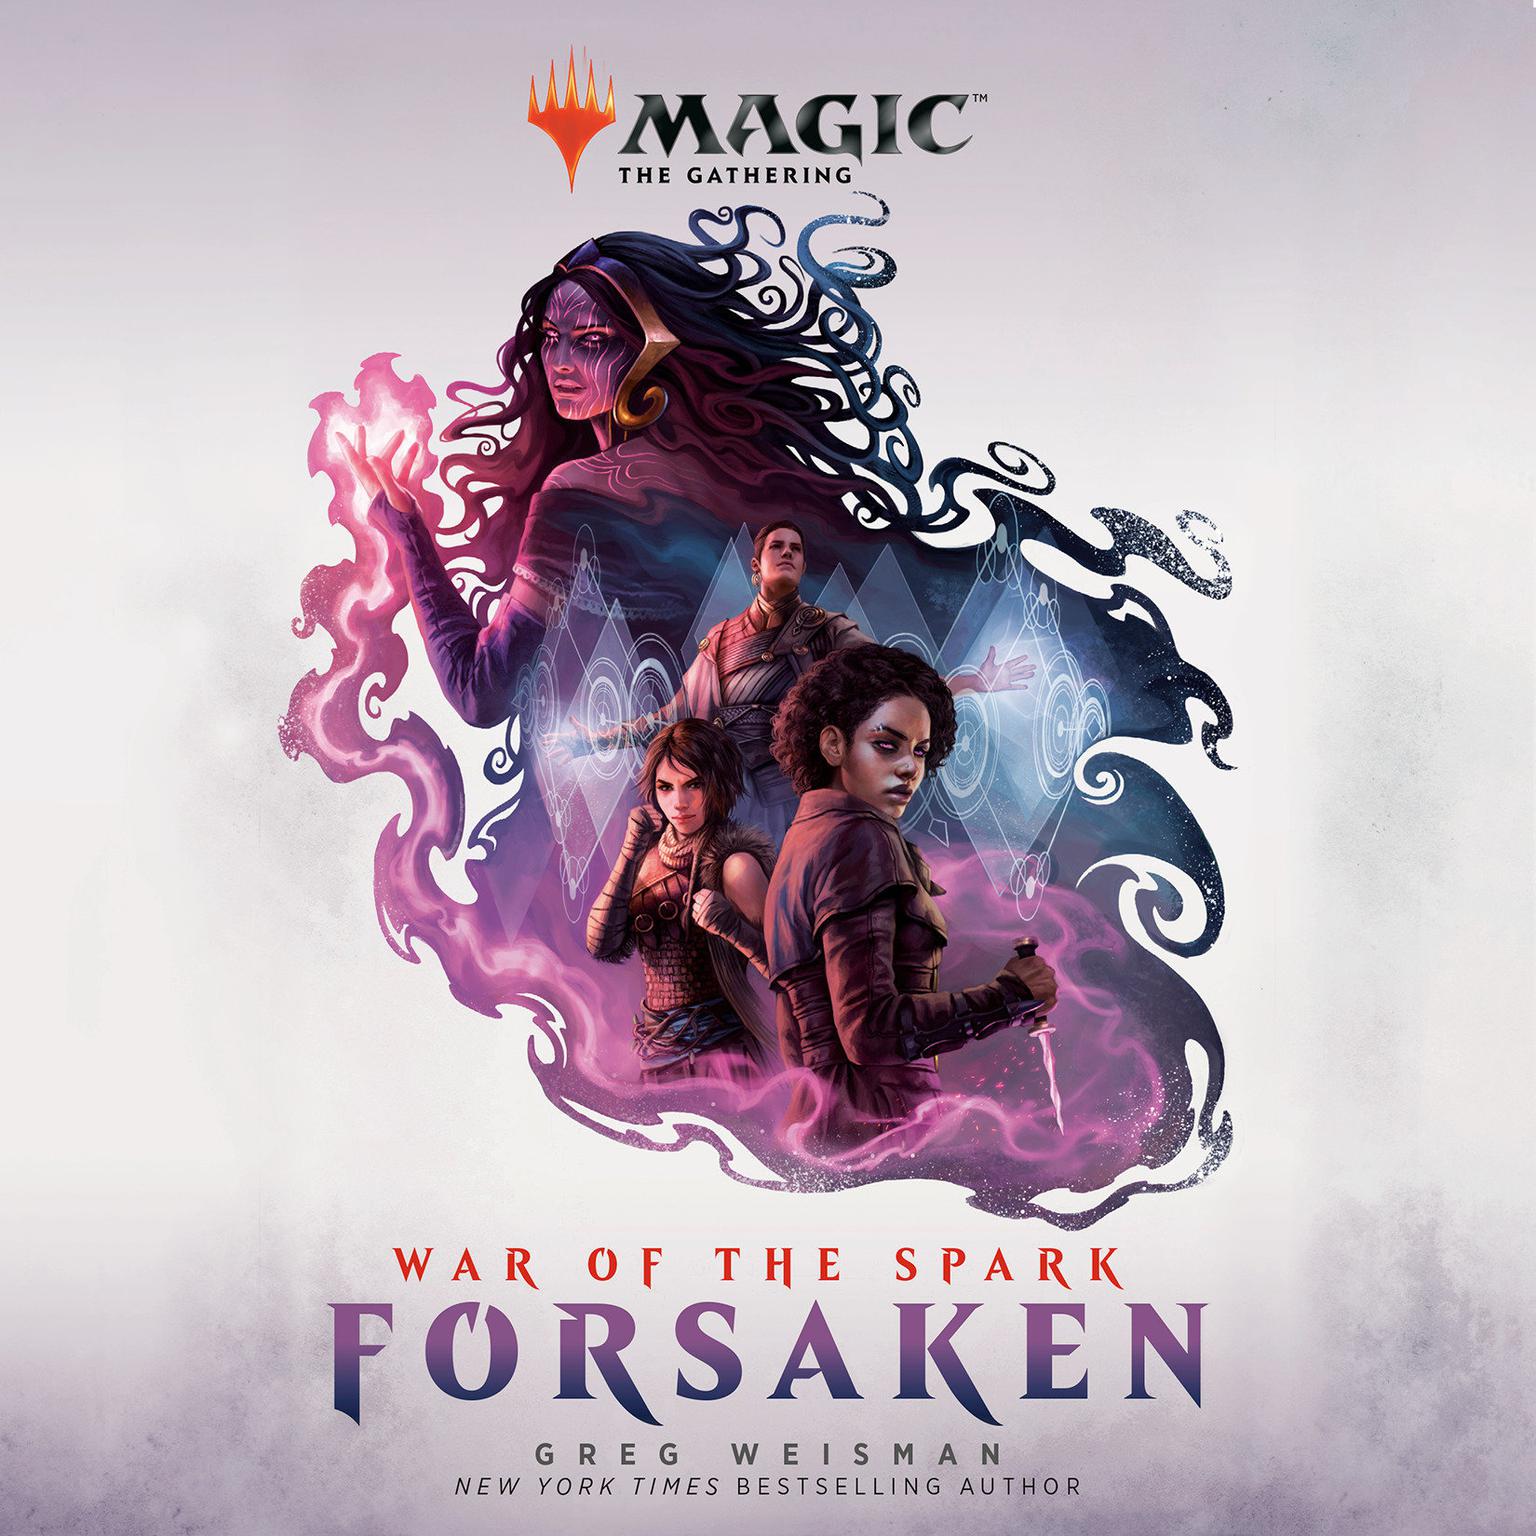 War of the Spark: Forsaken (Magic: The Gathering): Forsaken Audiobook, by Greg Weisman